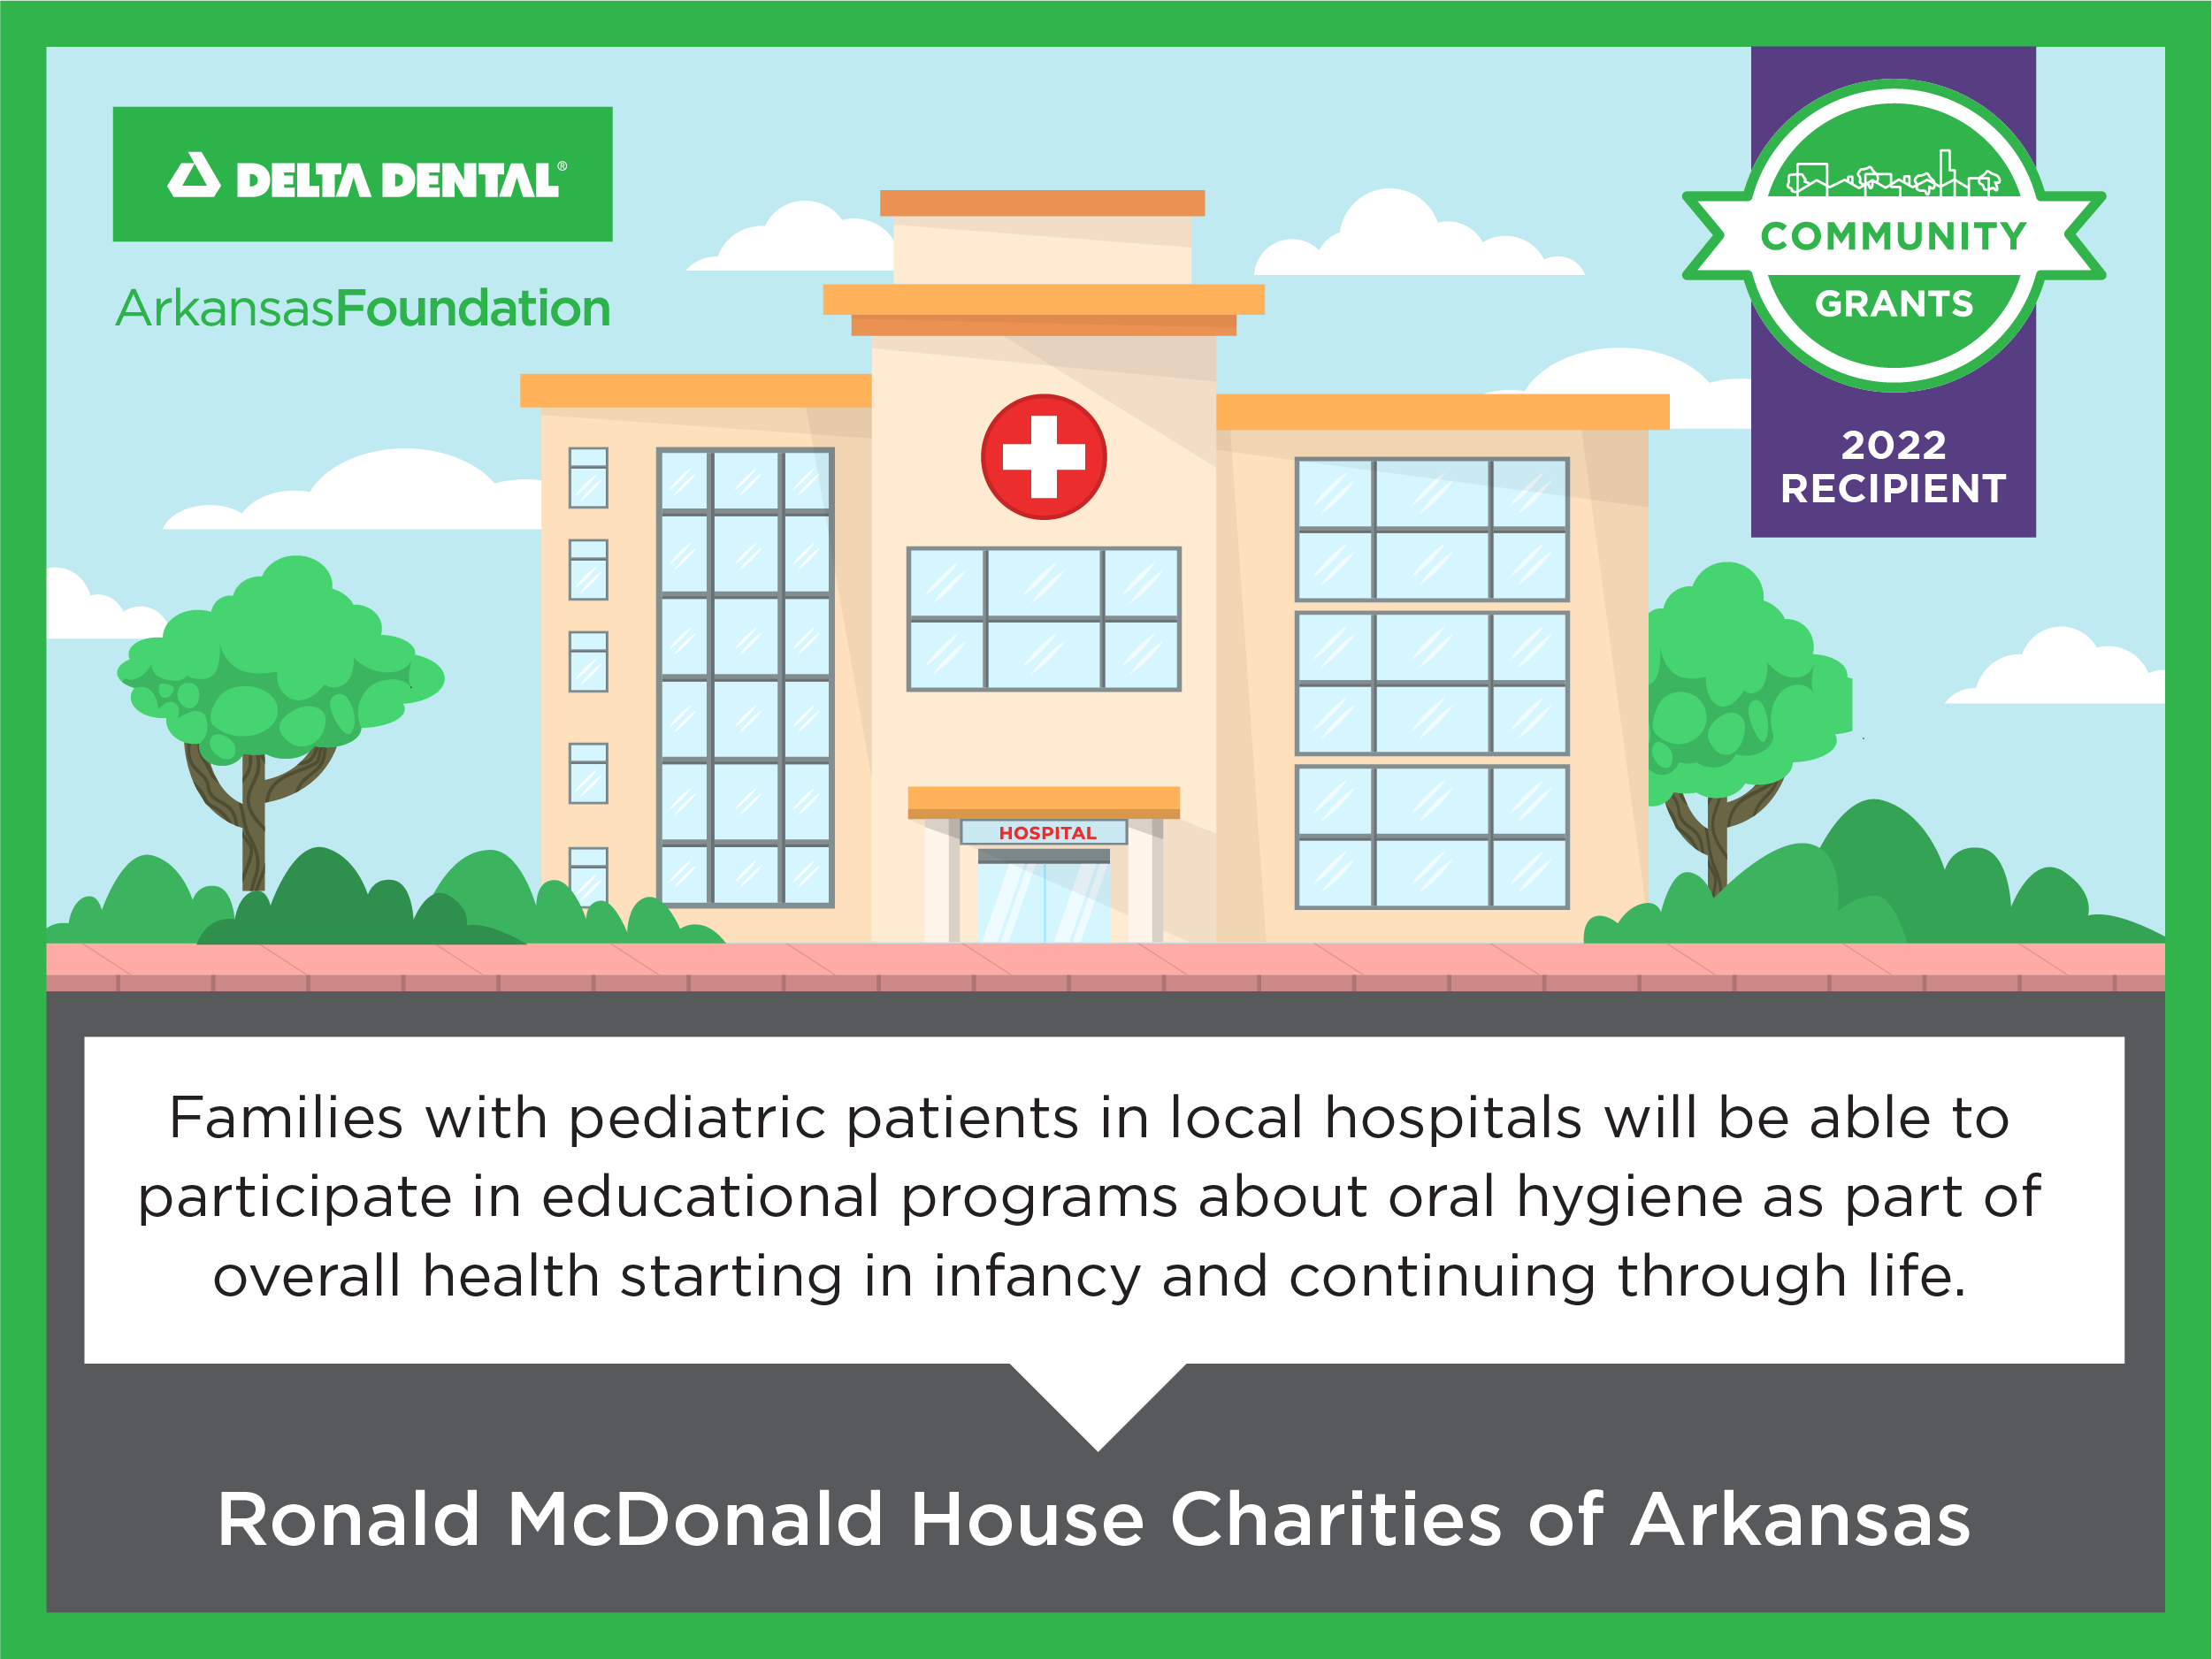 2022 Community Grantee Ronald McDonald House Charities of Arkansas